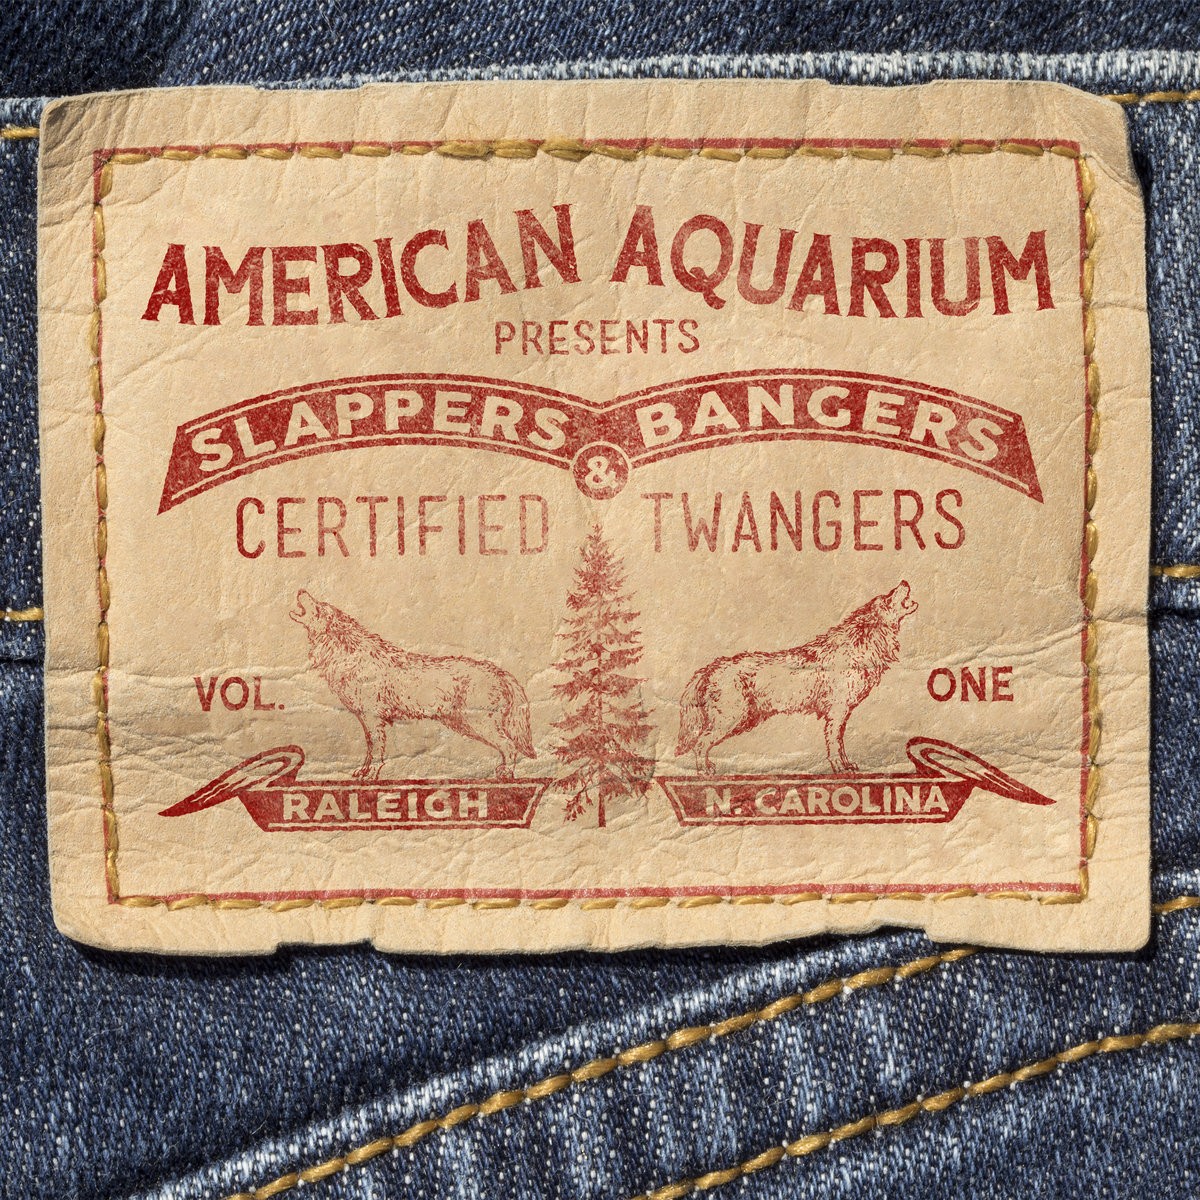 American Aquarium - Slappers, Bangers & Certified Twangers Vol. One